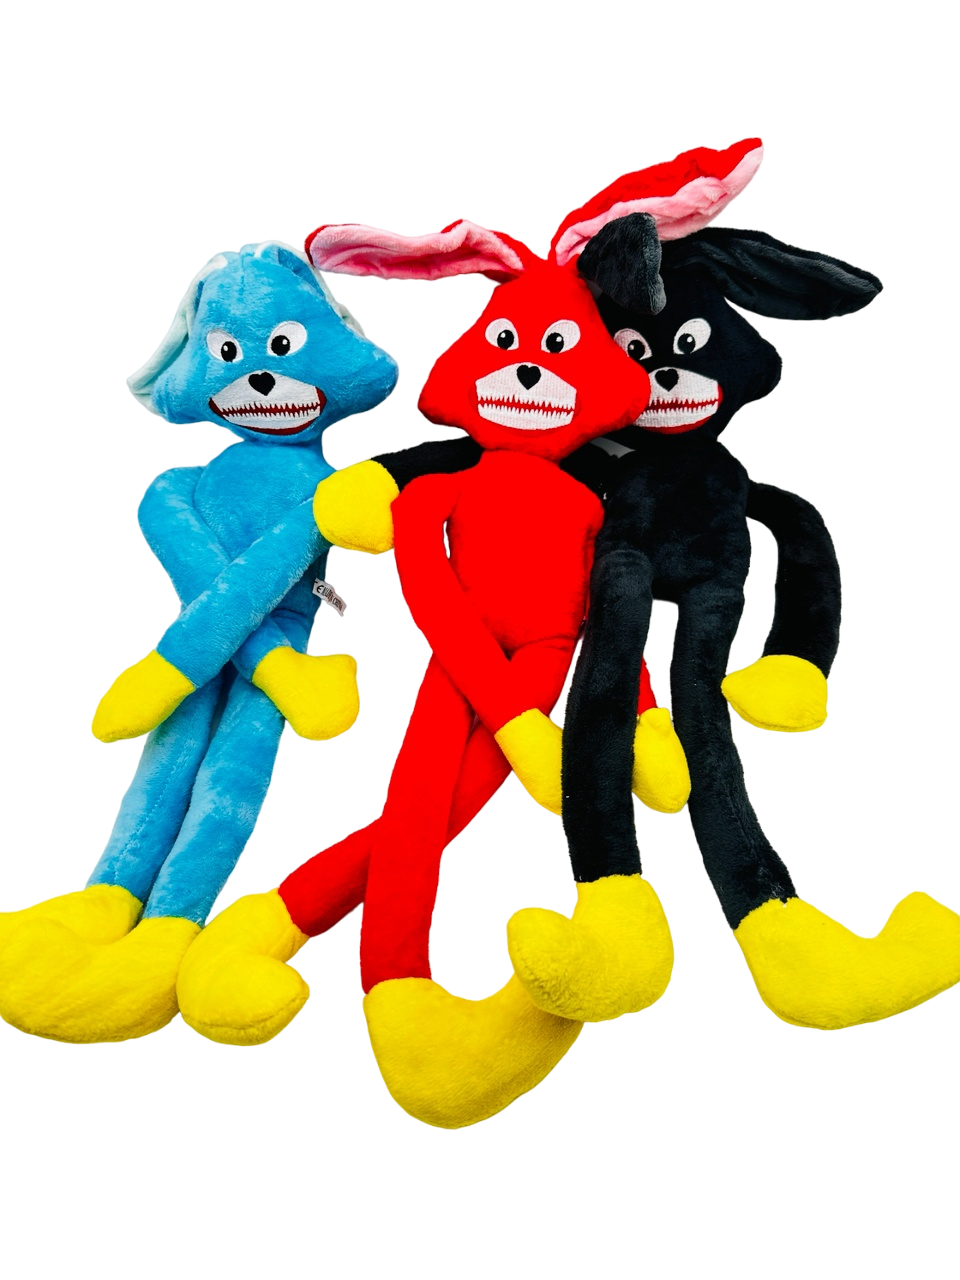 Мягкие игрушки 3 Веселых Зайца голубой, красный, черный охота на зайца